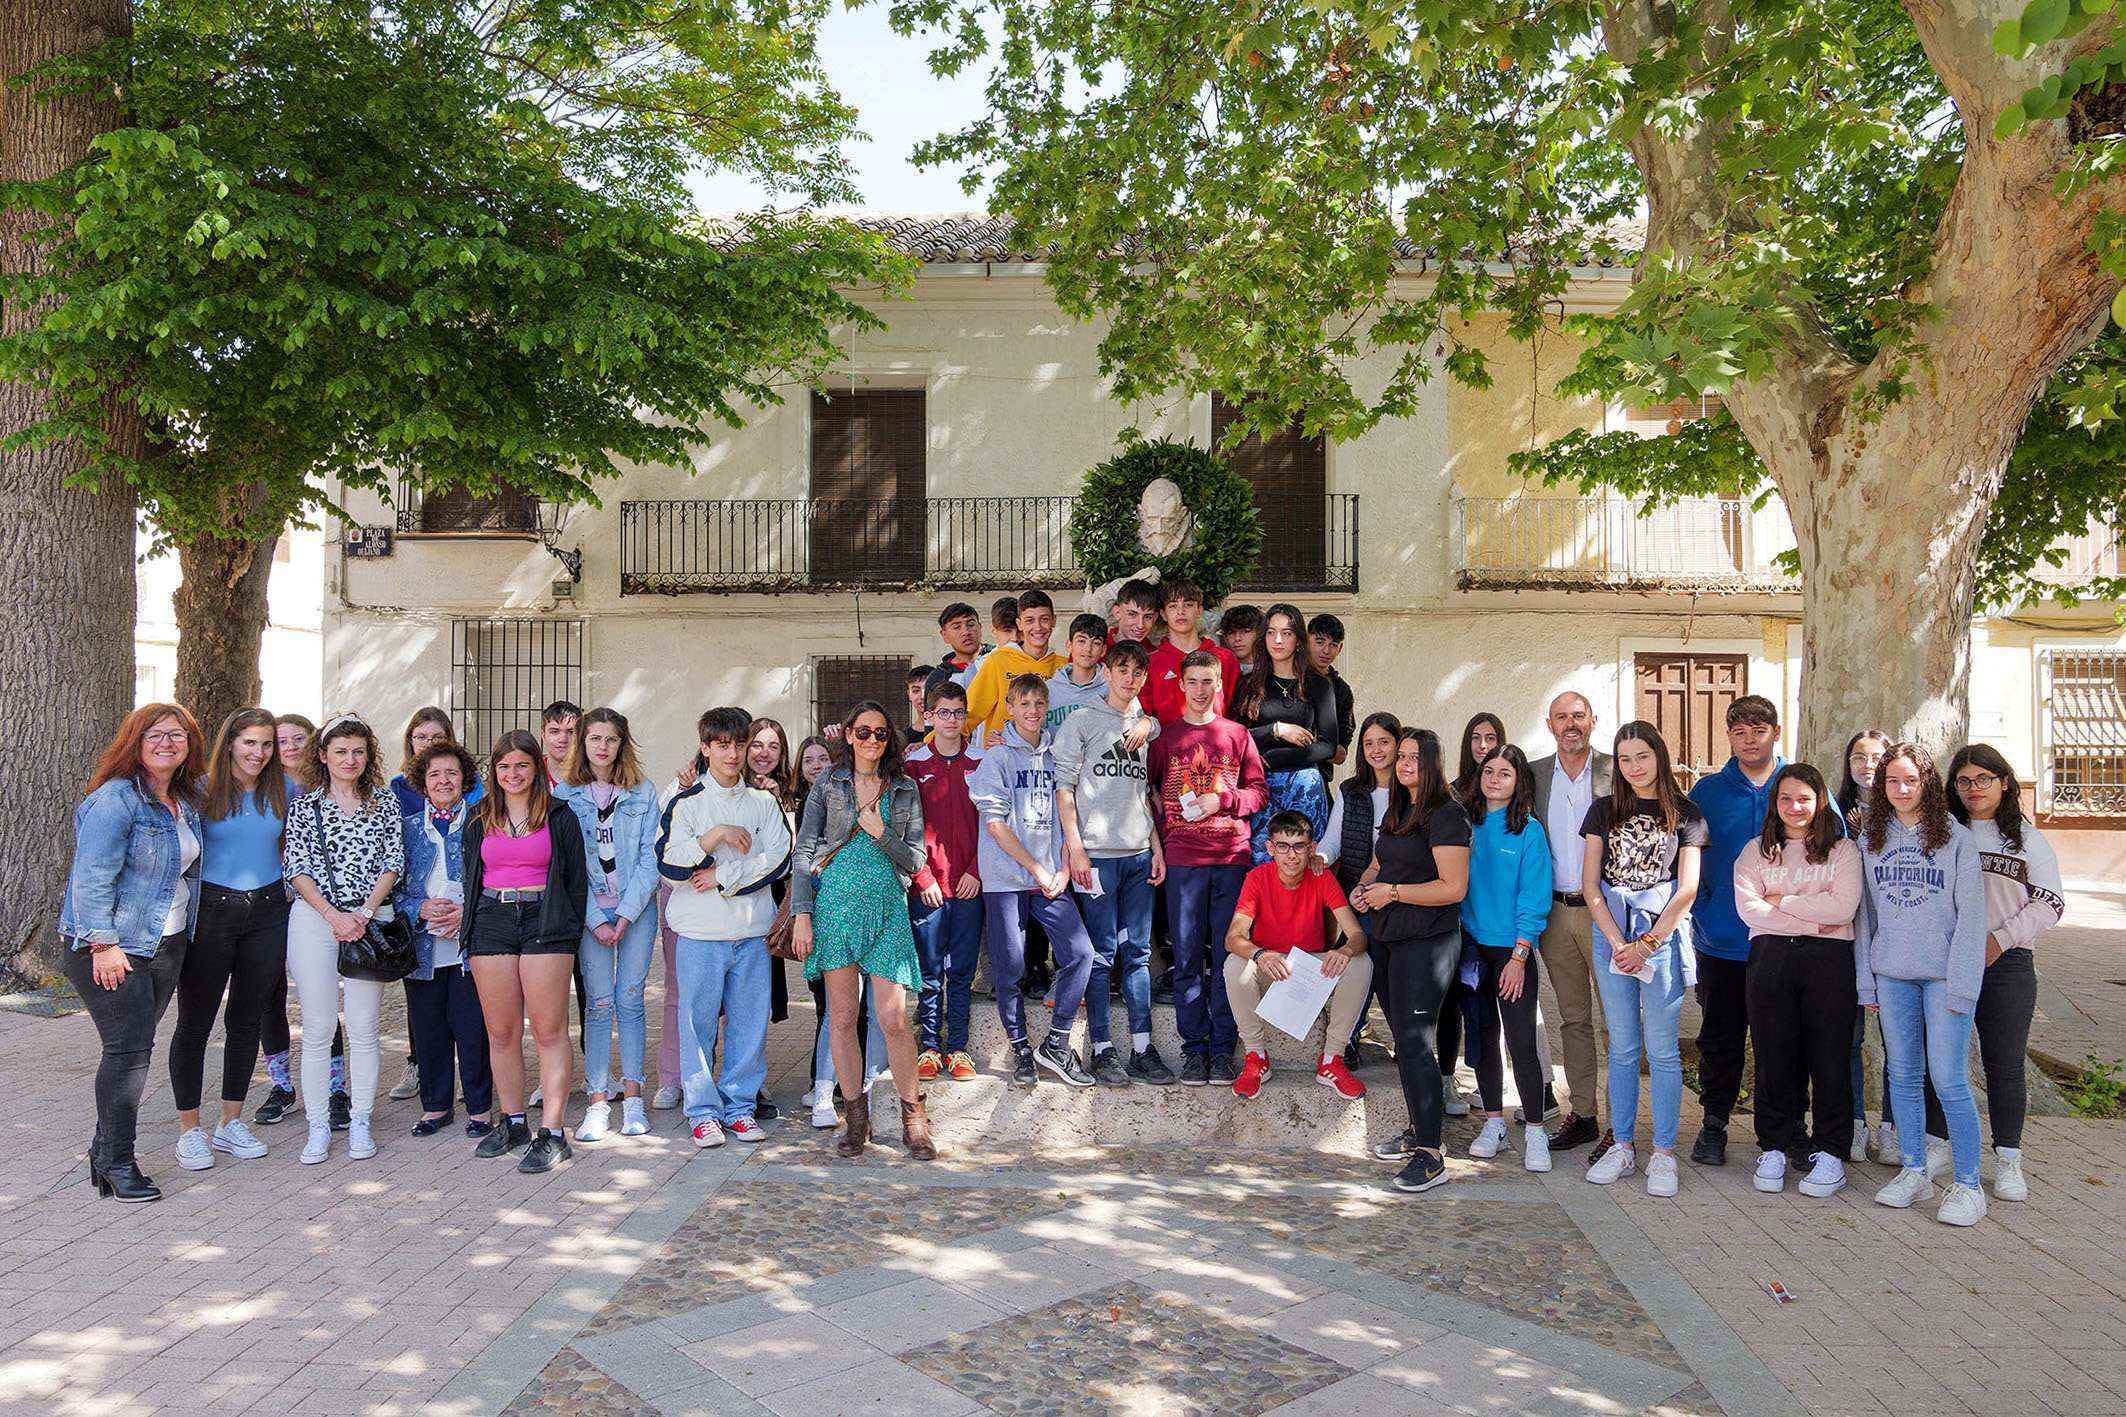 Estudiantes del IES Vicente Cano homenajean a Cervantes leyendo los sonetos y epitafios del Quijote